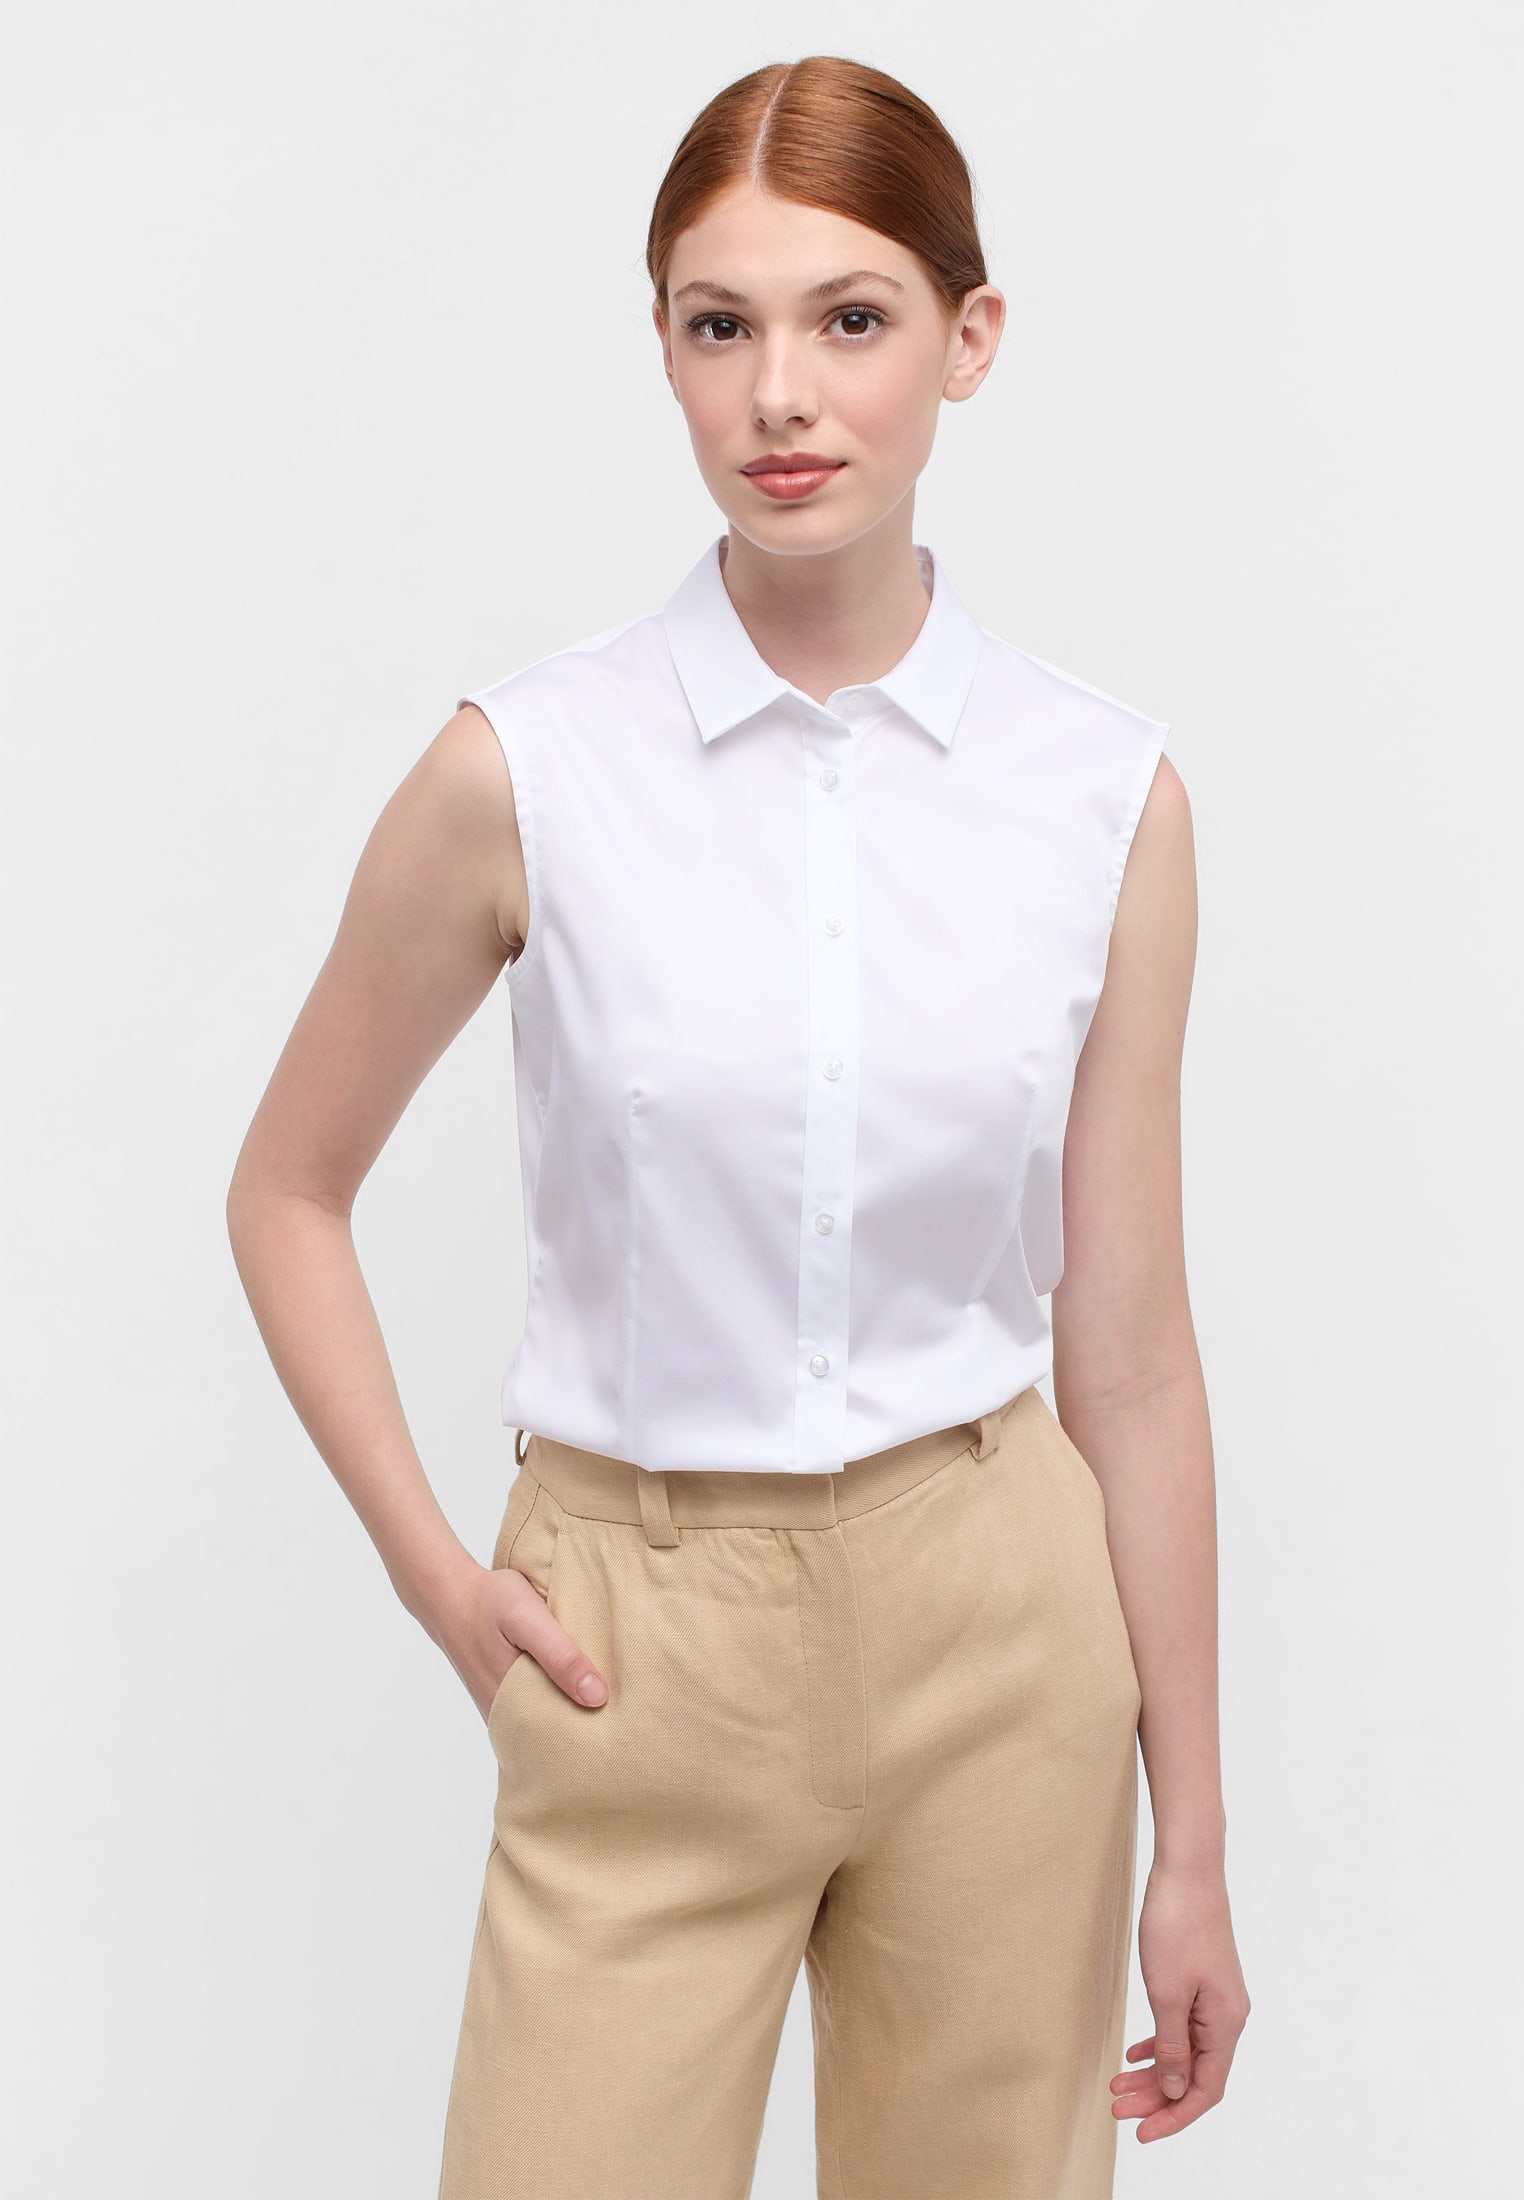 Satin Shirt Bluse in weiß | unifarben 2BL03768-00-01-34-sl Arm ohne weiß | | 34 